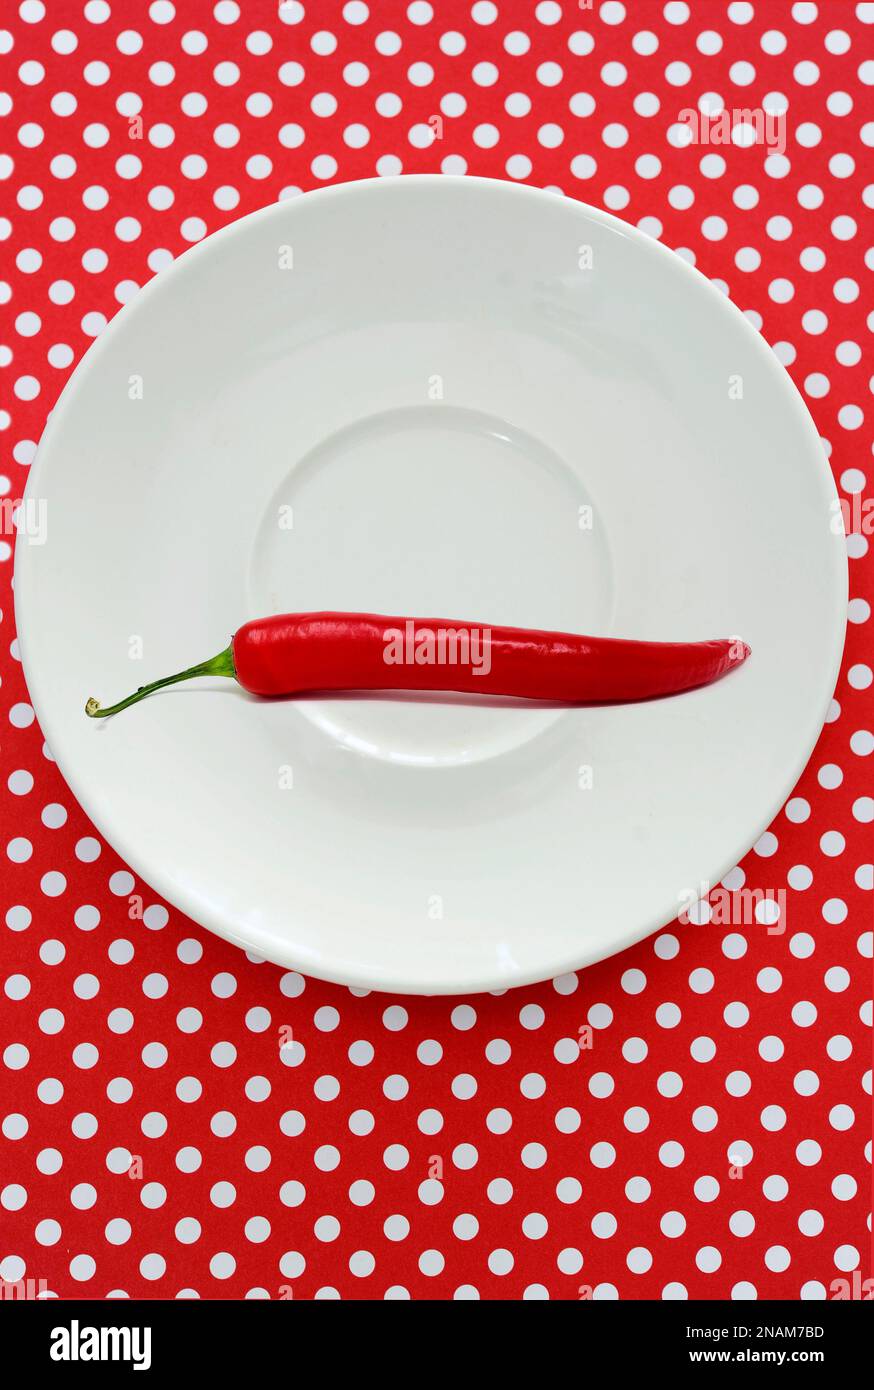 Rote Chili-Pfeffer auf einem weißen Teller auf einem Hintergrund mit Polka-Punkten Stockfoto